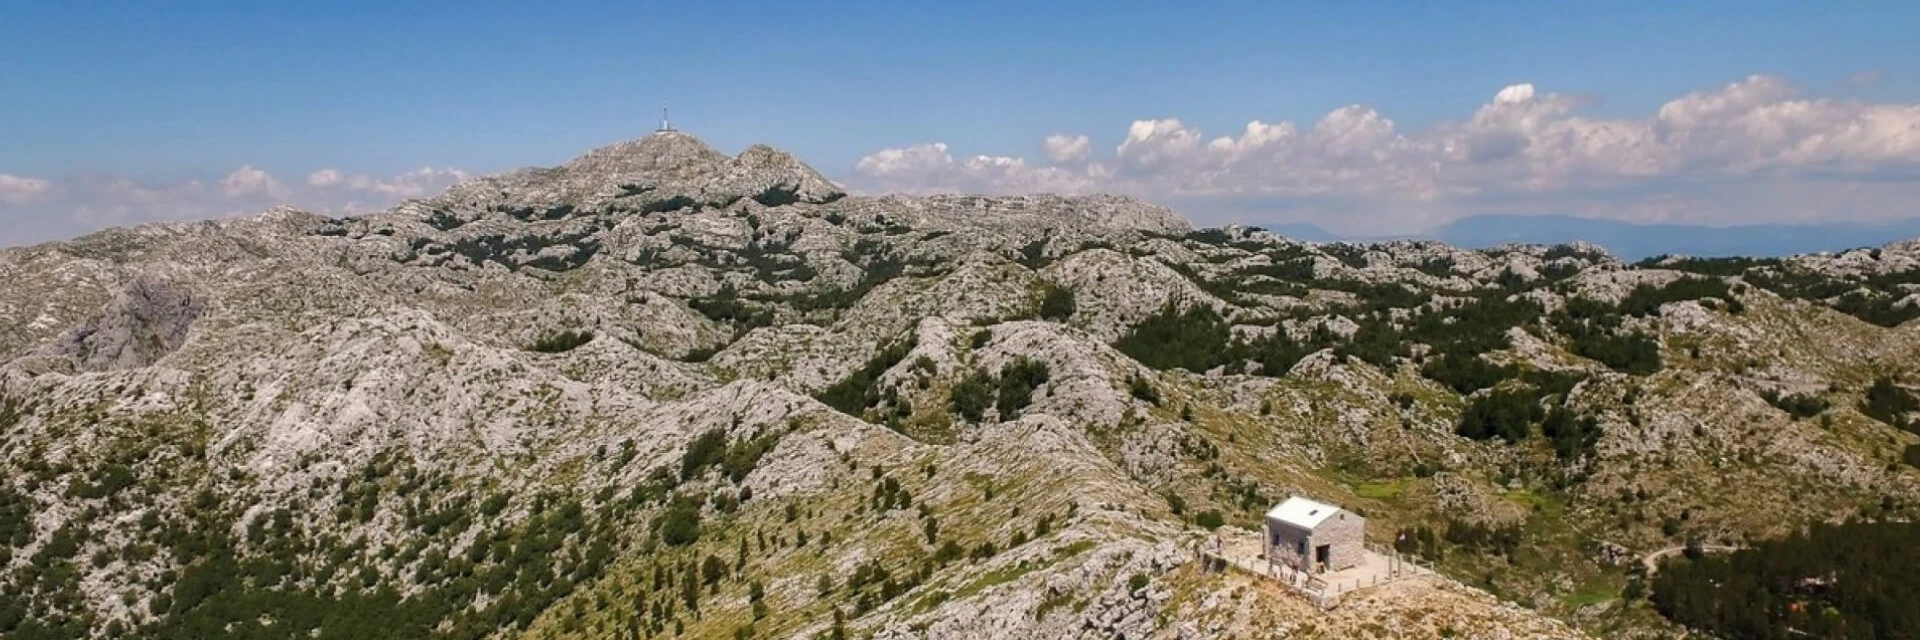 Počnite svoju hrvatsku planinarsku avanturu u Podgori kraj Makarske